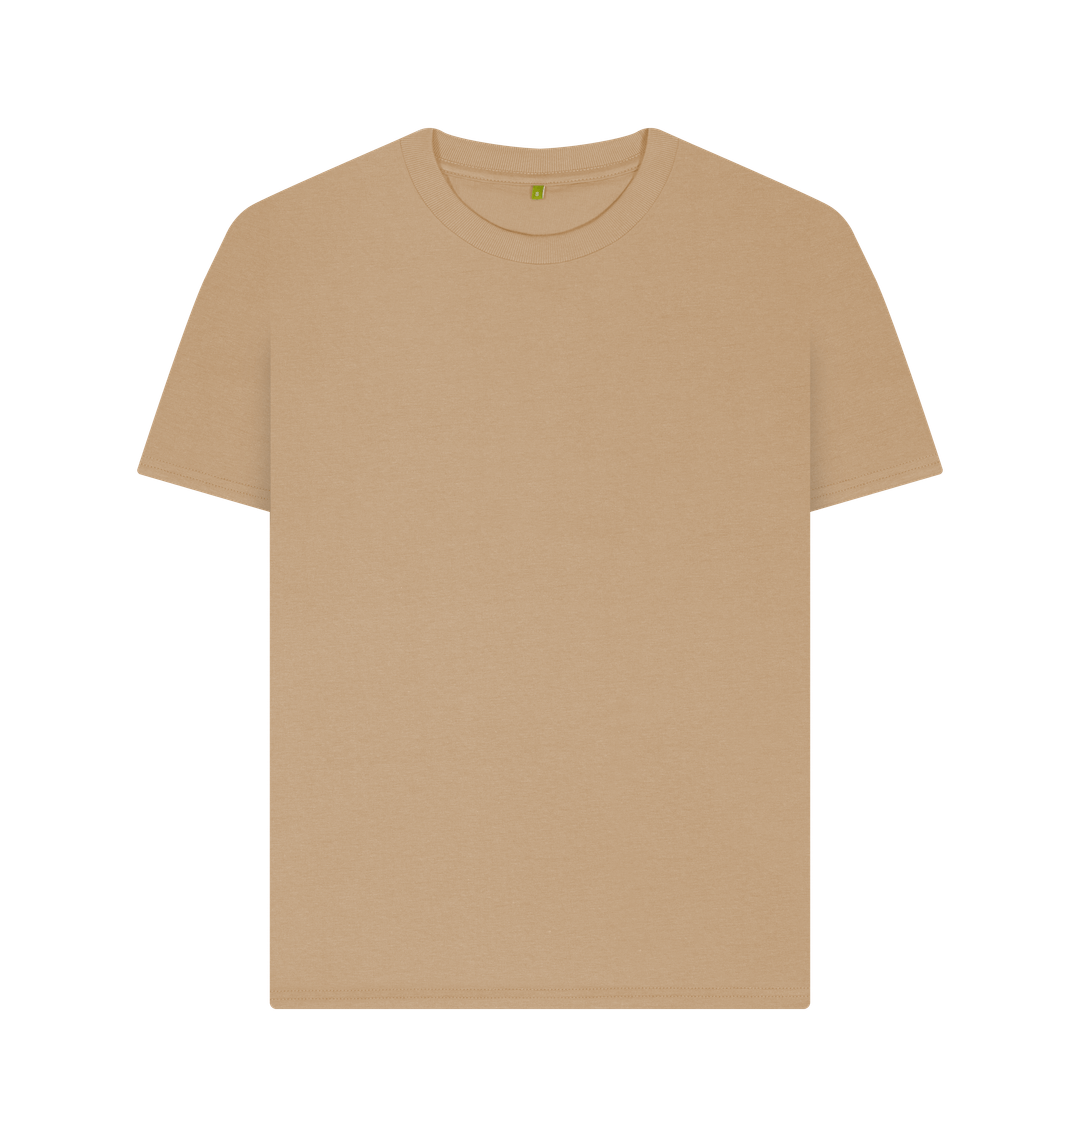 Sand Women's Plain T-shirt